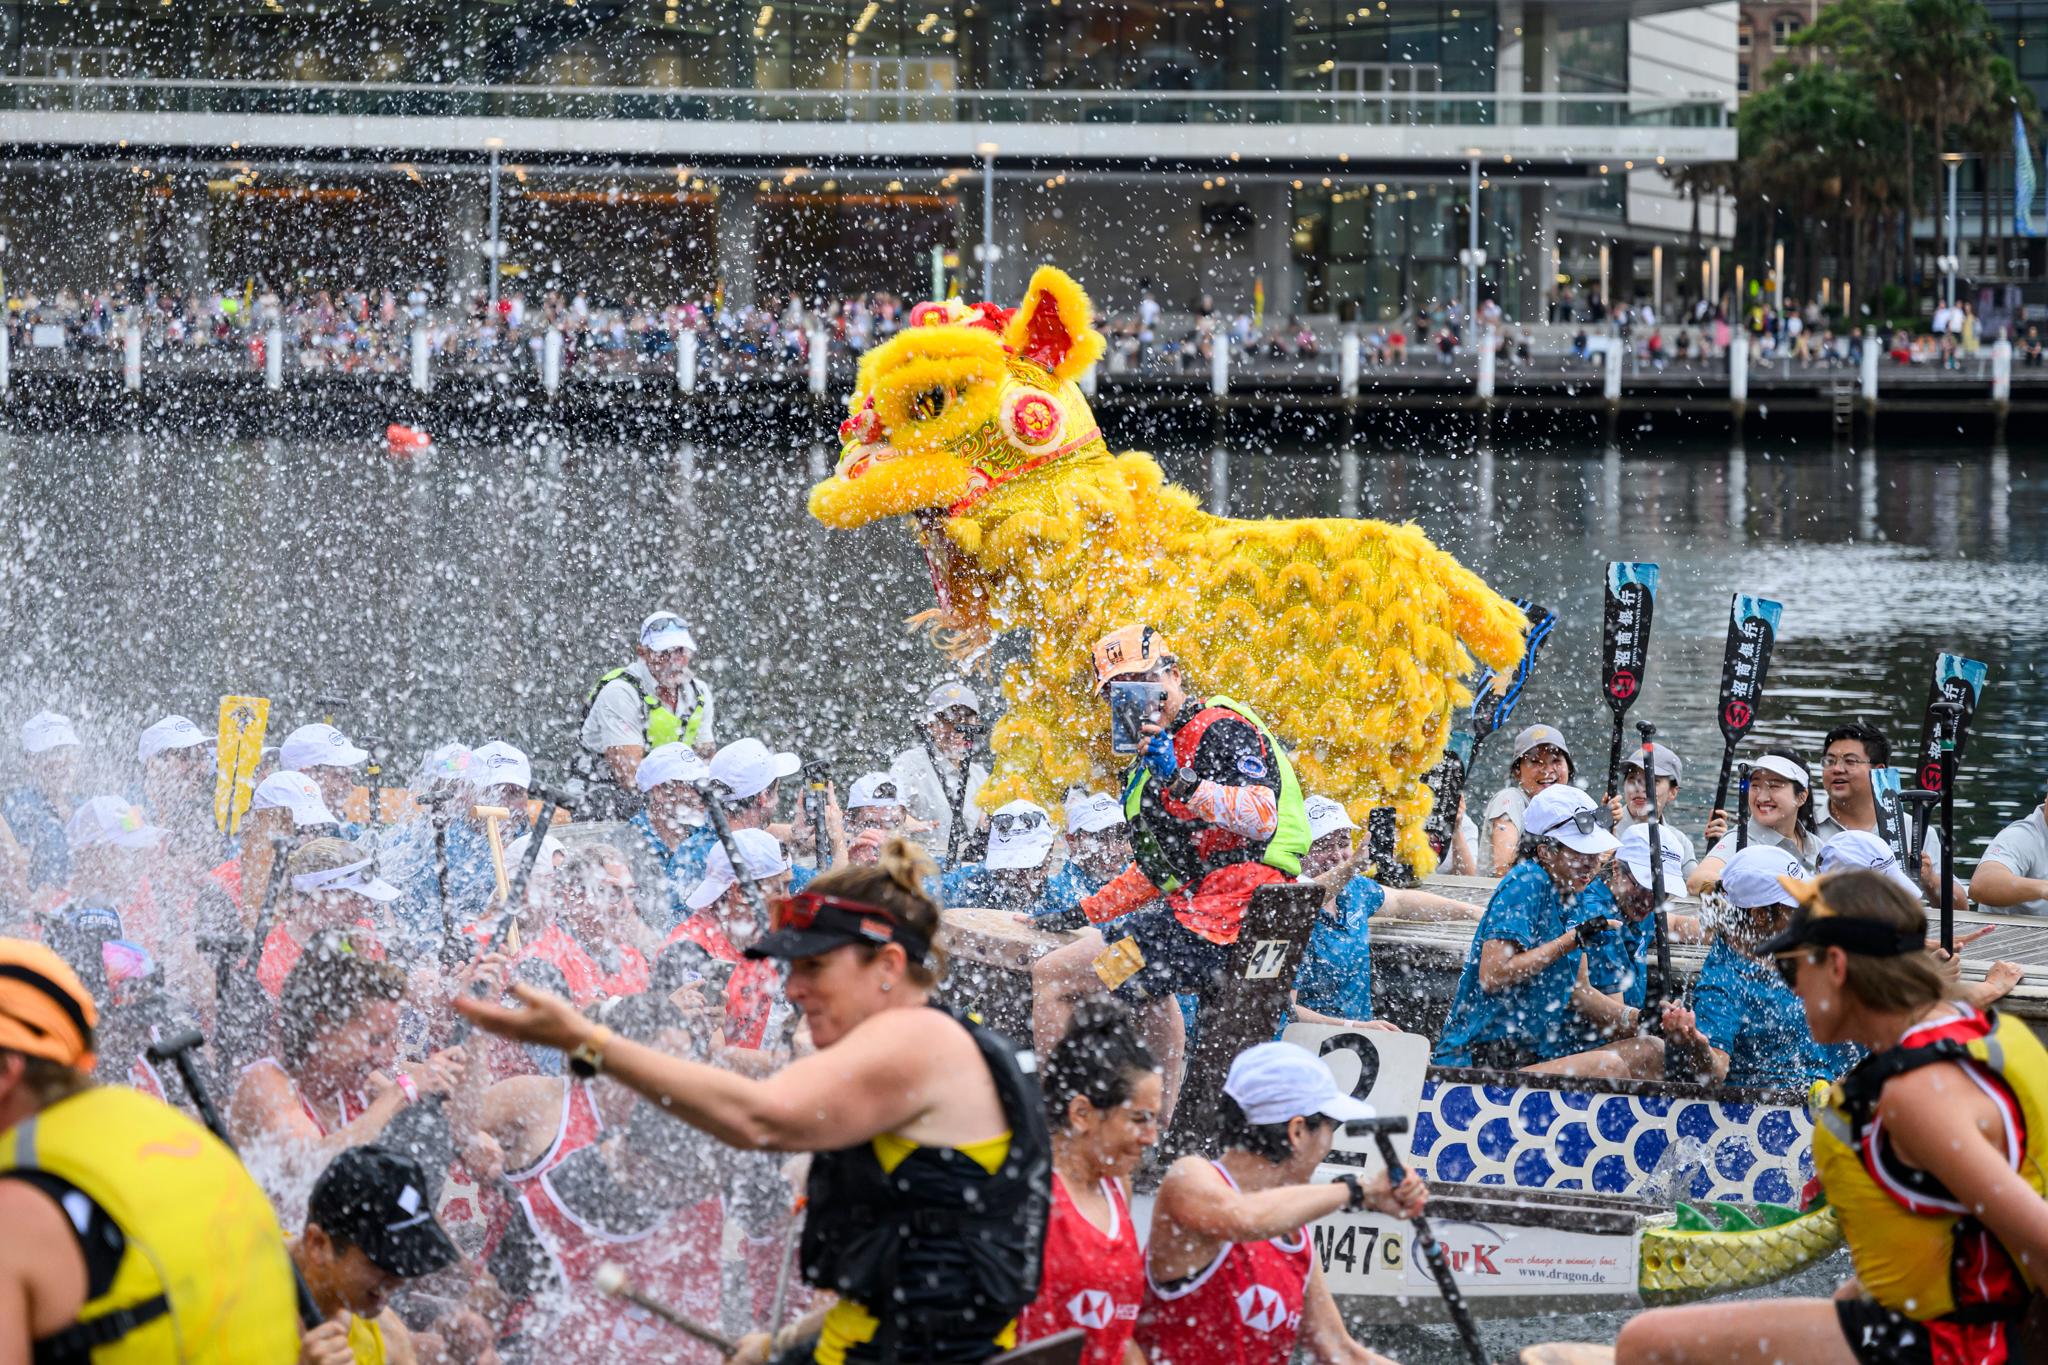 香港駐悉尼經濟貿易辦事處參加二月十六日至十八日在澳洲悉尼市舉行的悉尼新春龍舟節。圖示在二月十六日開幕典禮上的舞獅表演。